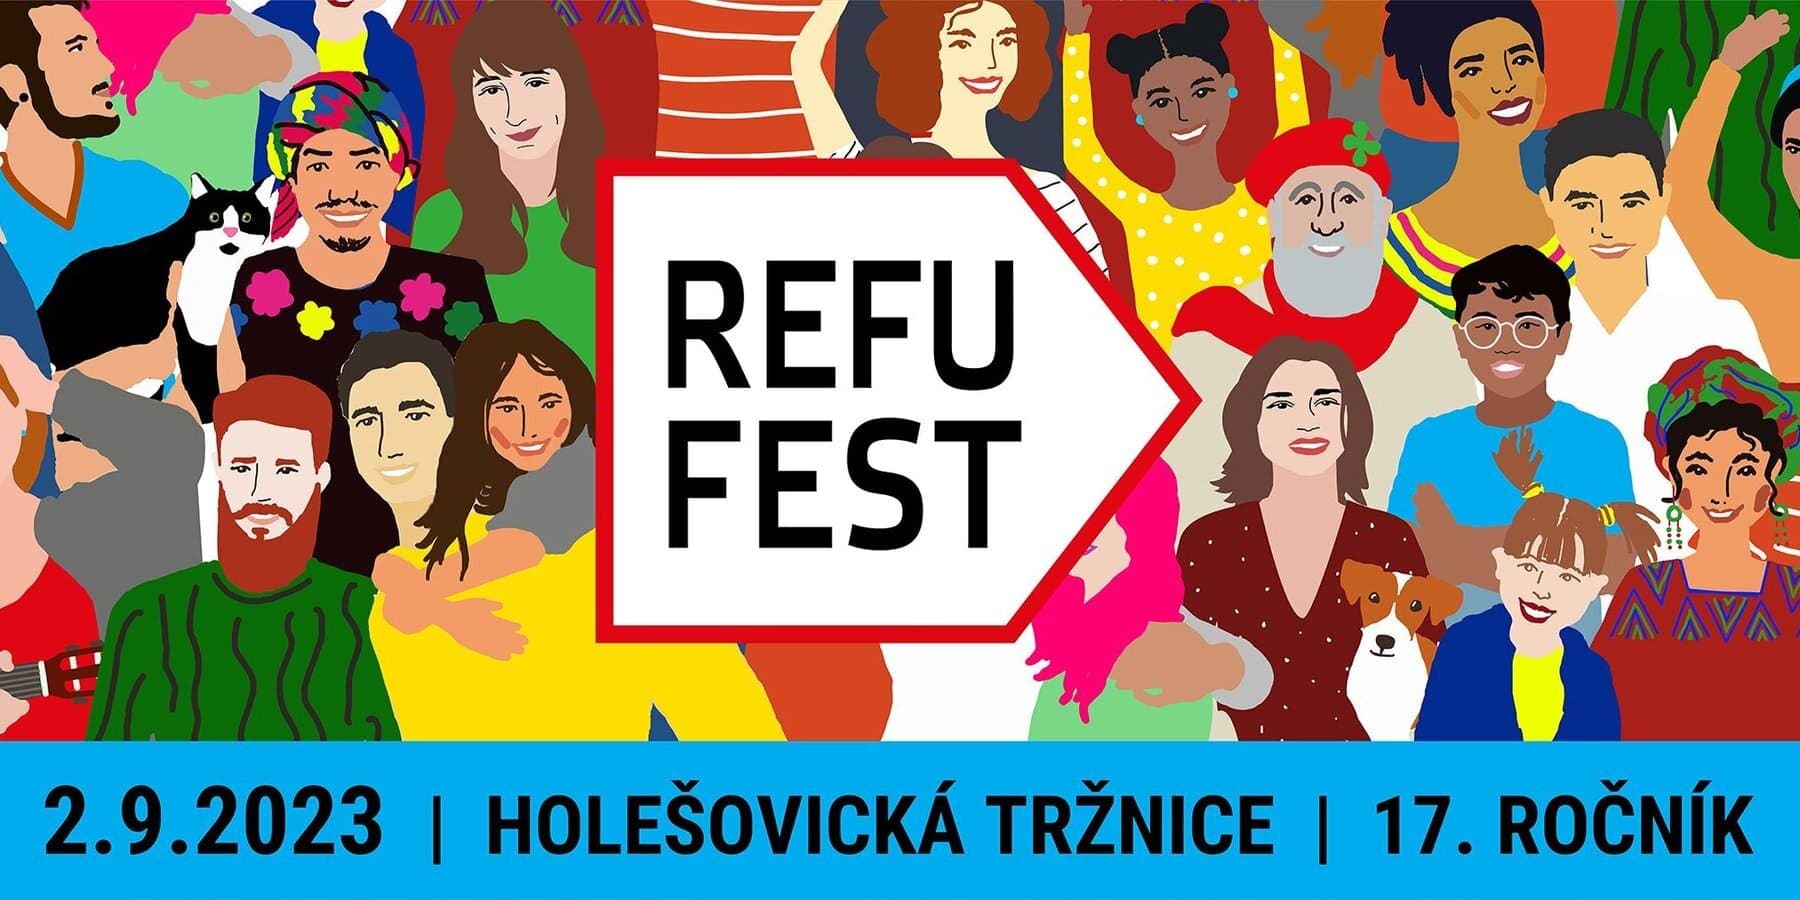 2 сентября в Праге состоится 17-й межкультурный фестиваль RefuFest